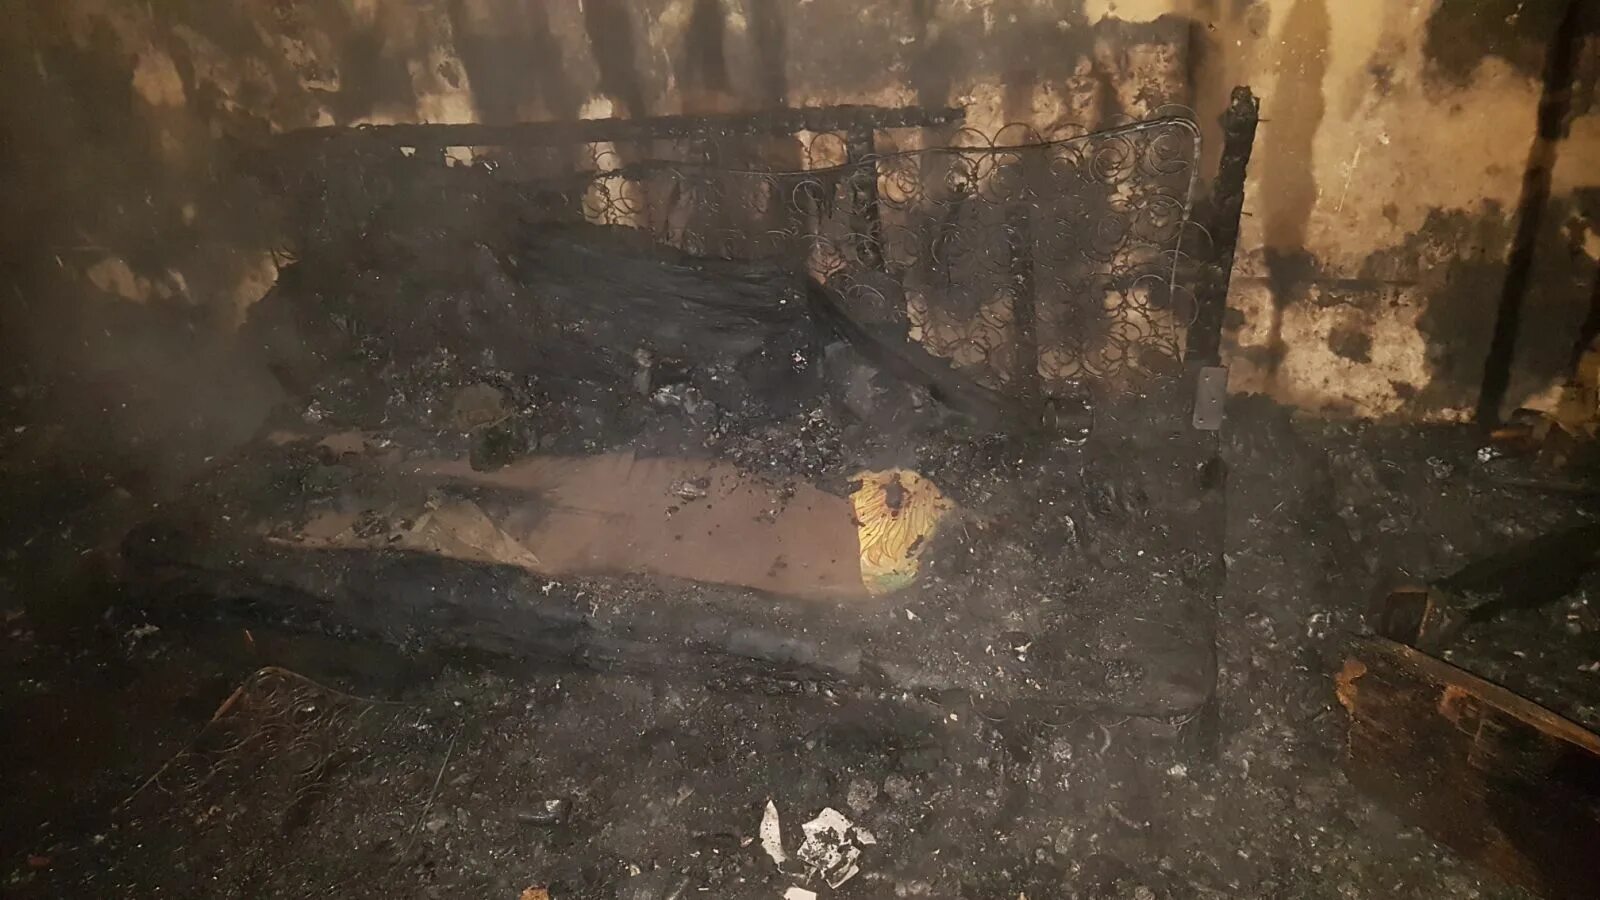 Обгоревшие трупы после пожара. Обугленное тело человека после пожара. Обгоревшее тело человека после пожара.